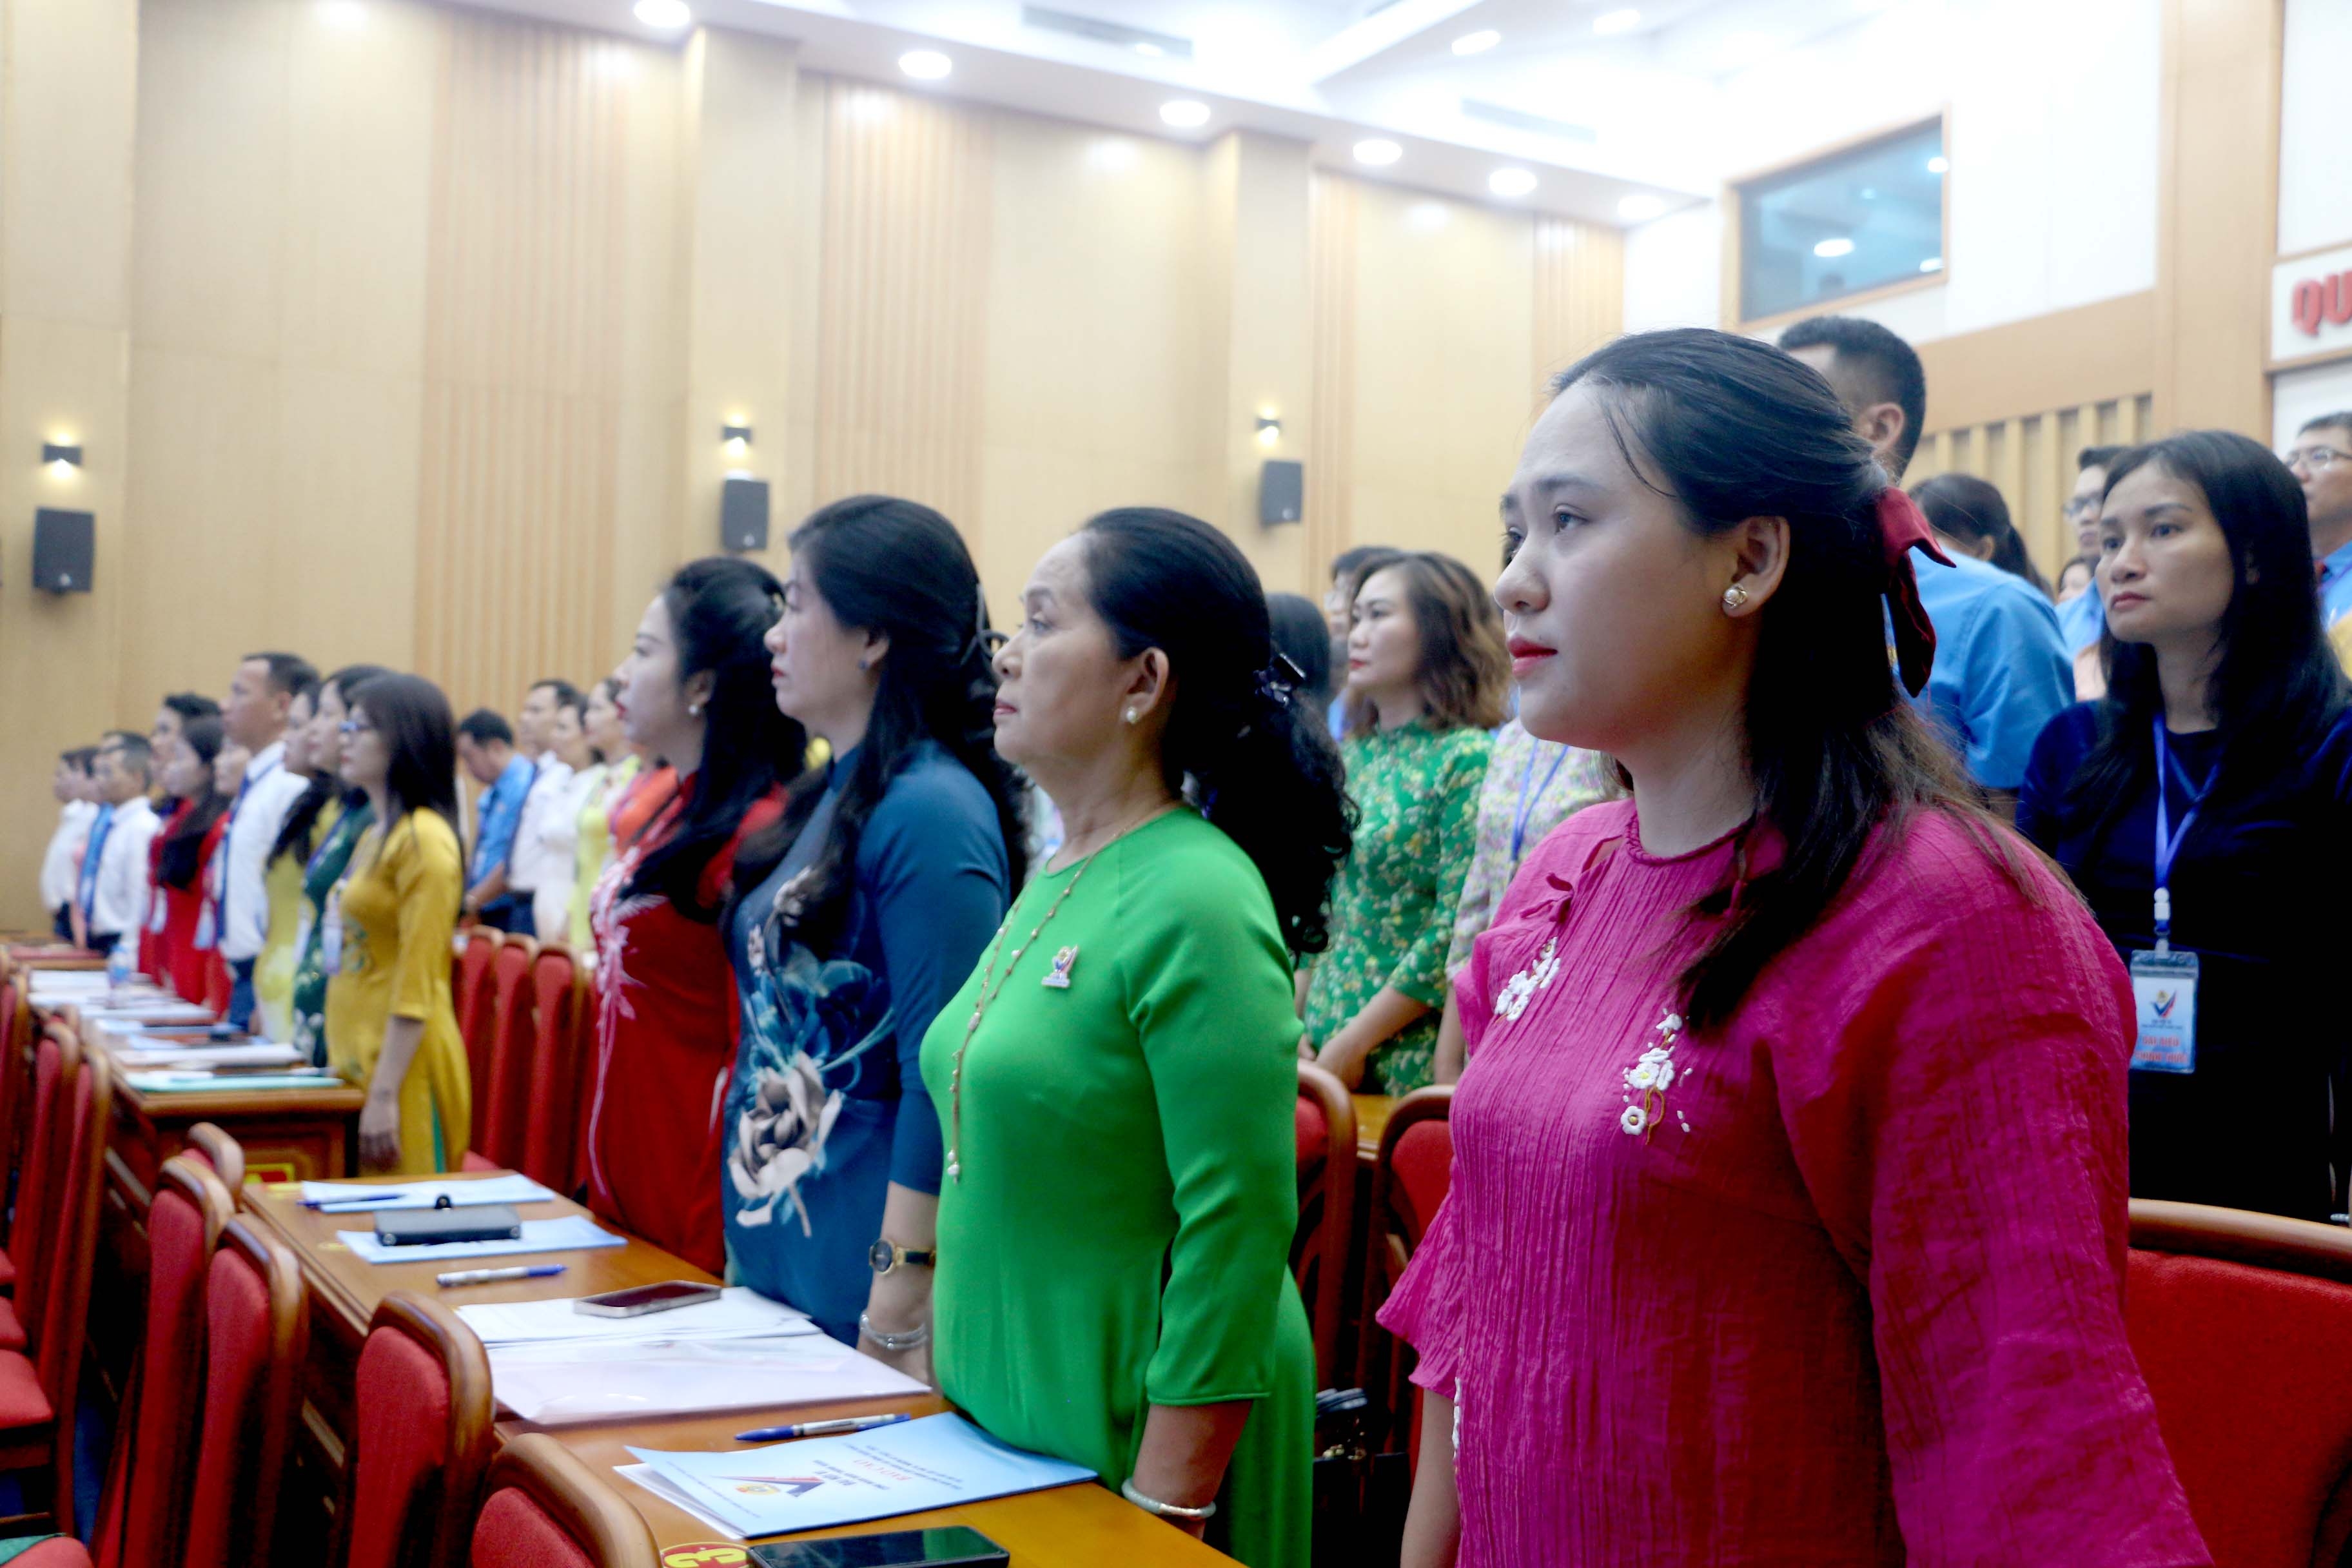 TRỰC TUYẾN HÌNH ẢNH: Đại hội Công đoàn quận Thanh Xuân lần thứ VI